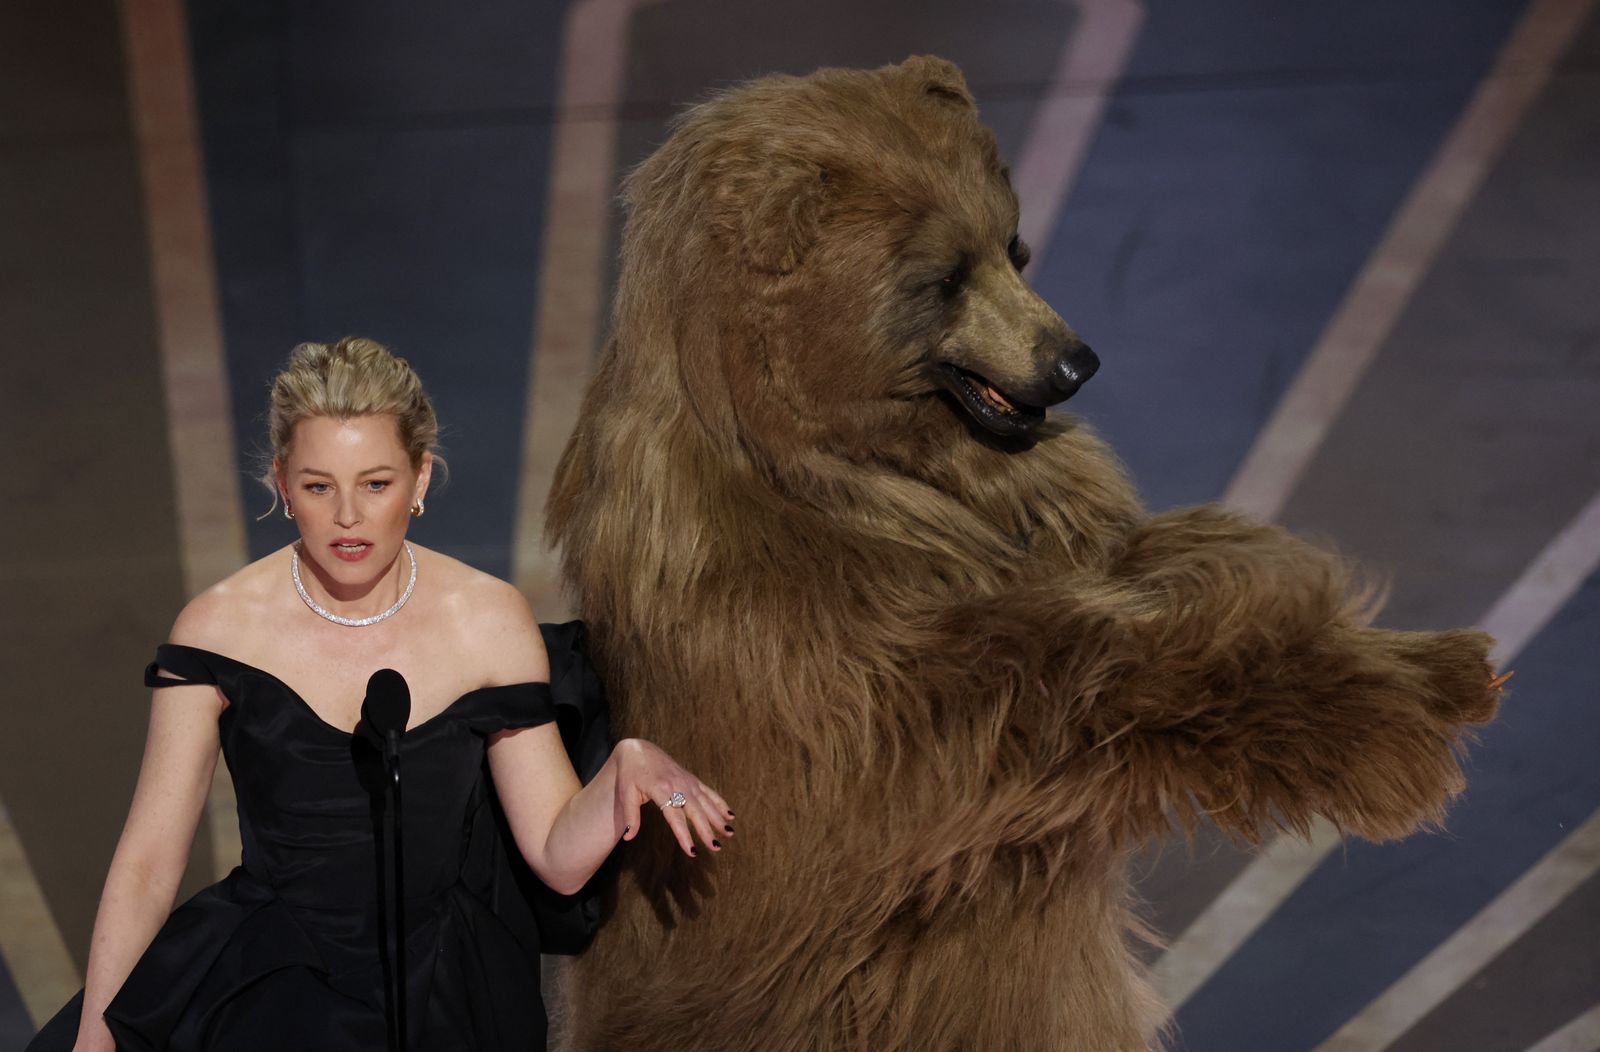 95th Academy Awards - Oscars Show - Hollywood - REUTERS